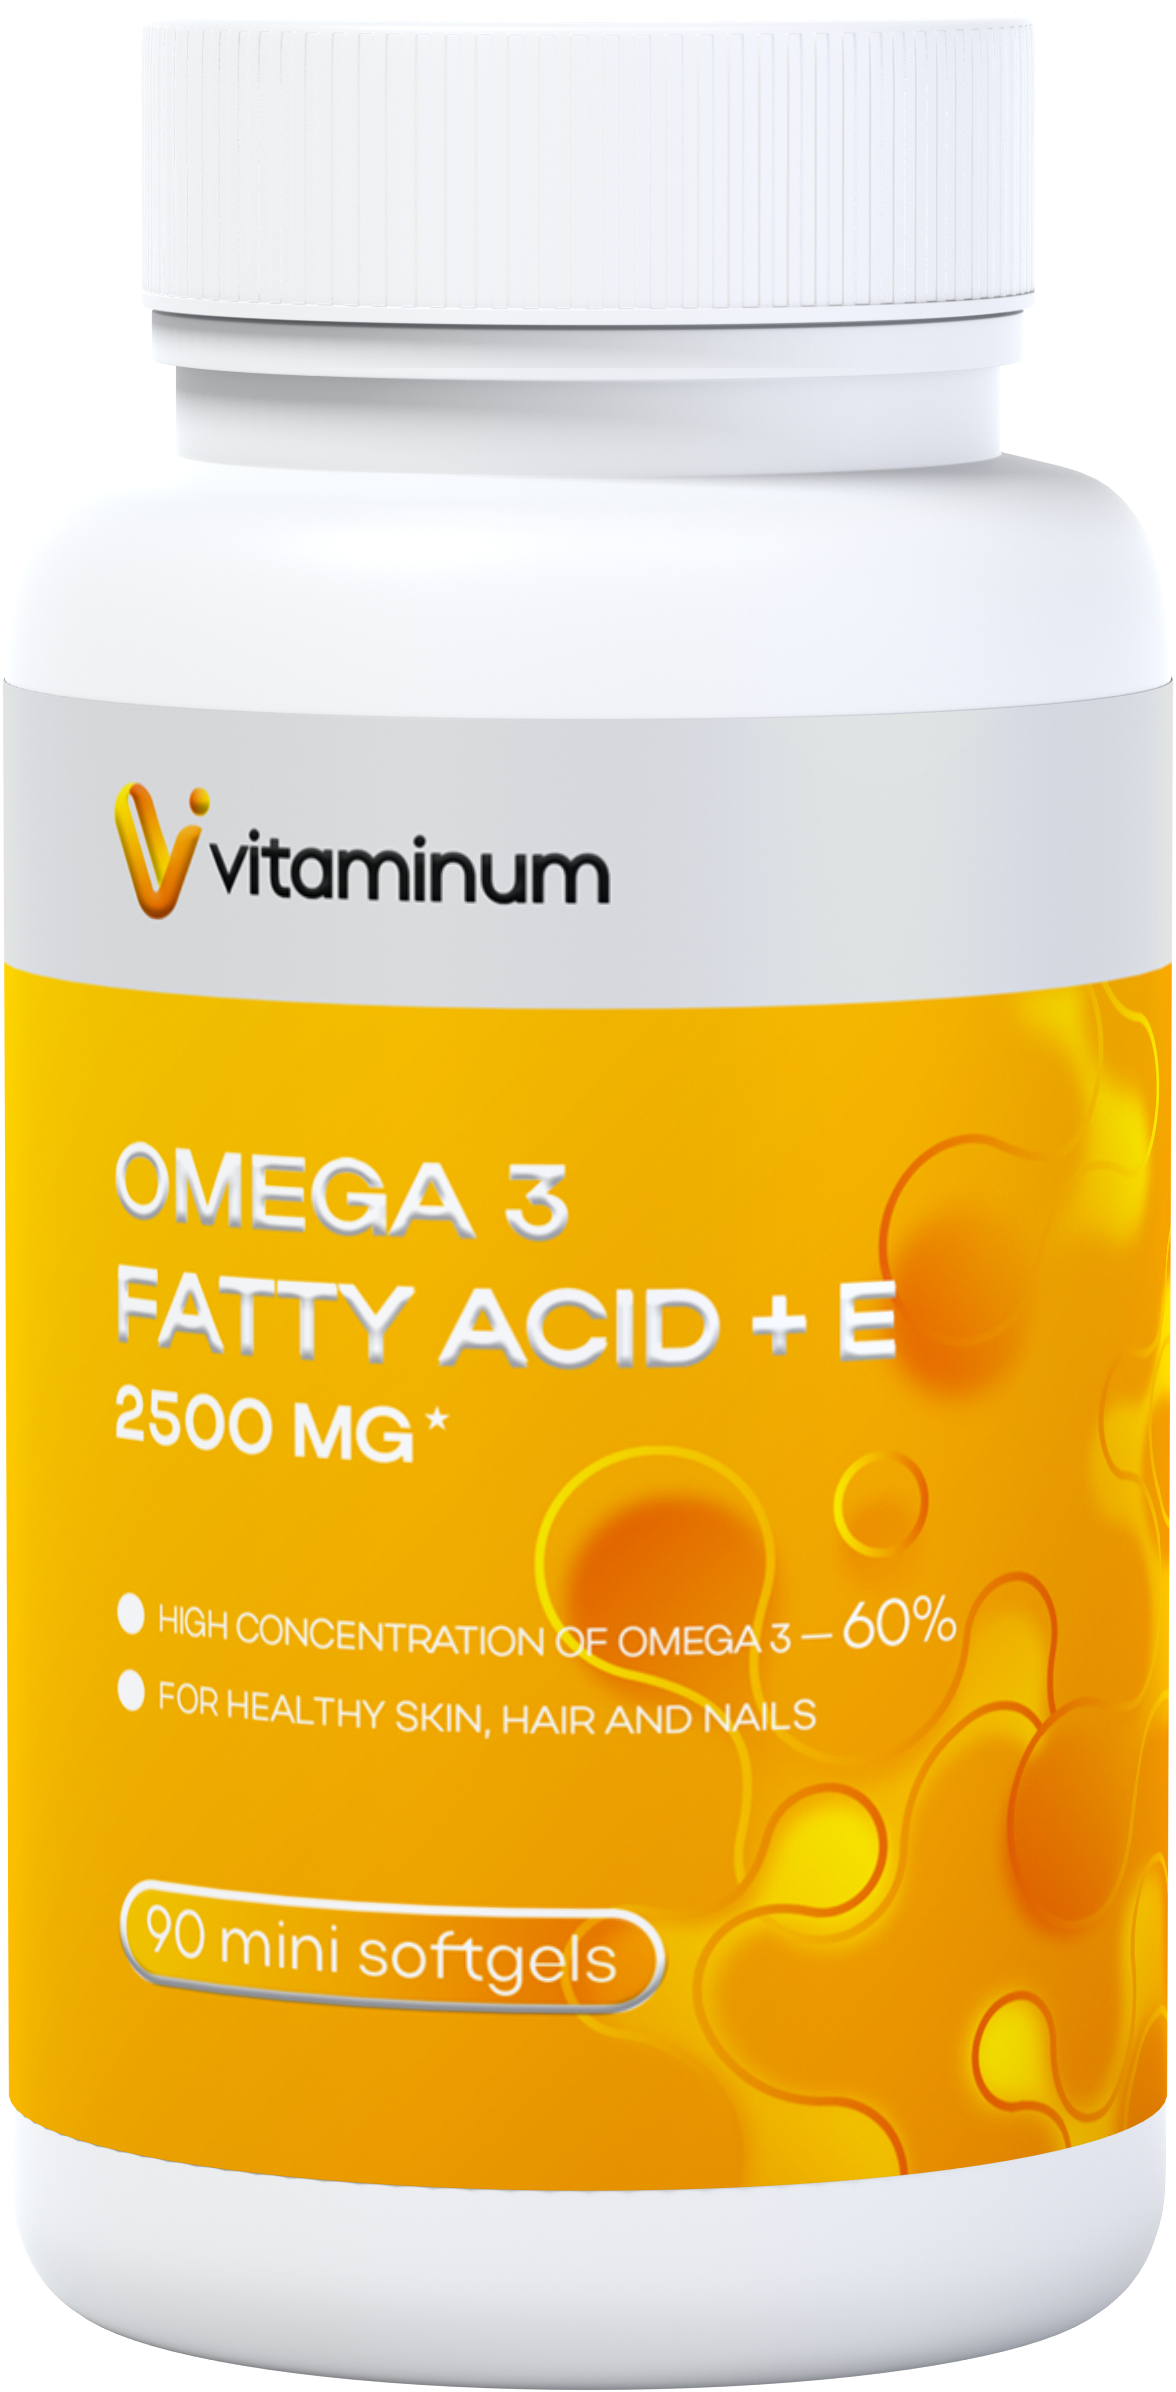  Vitaminum ОМЕГА 3 60% + витамин Е (2500 MG*) 90 капсул 700 мг   в Ижевске